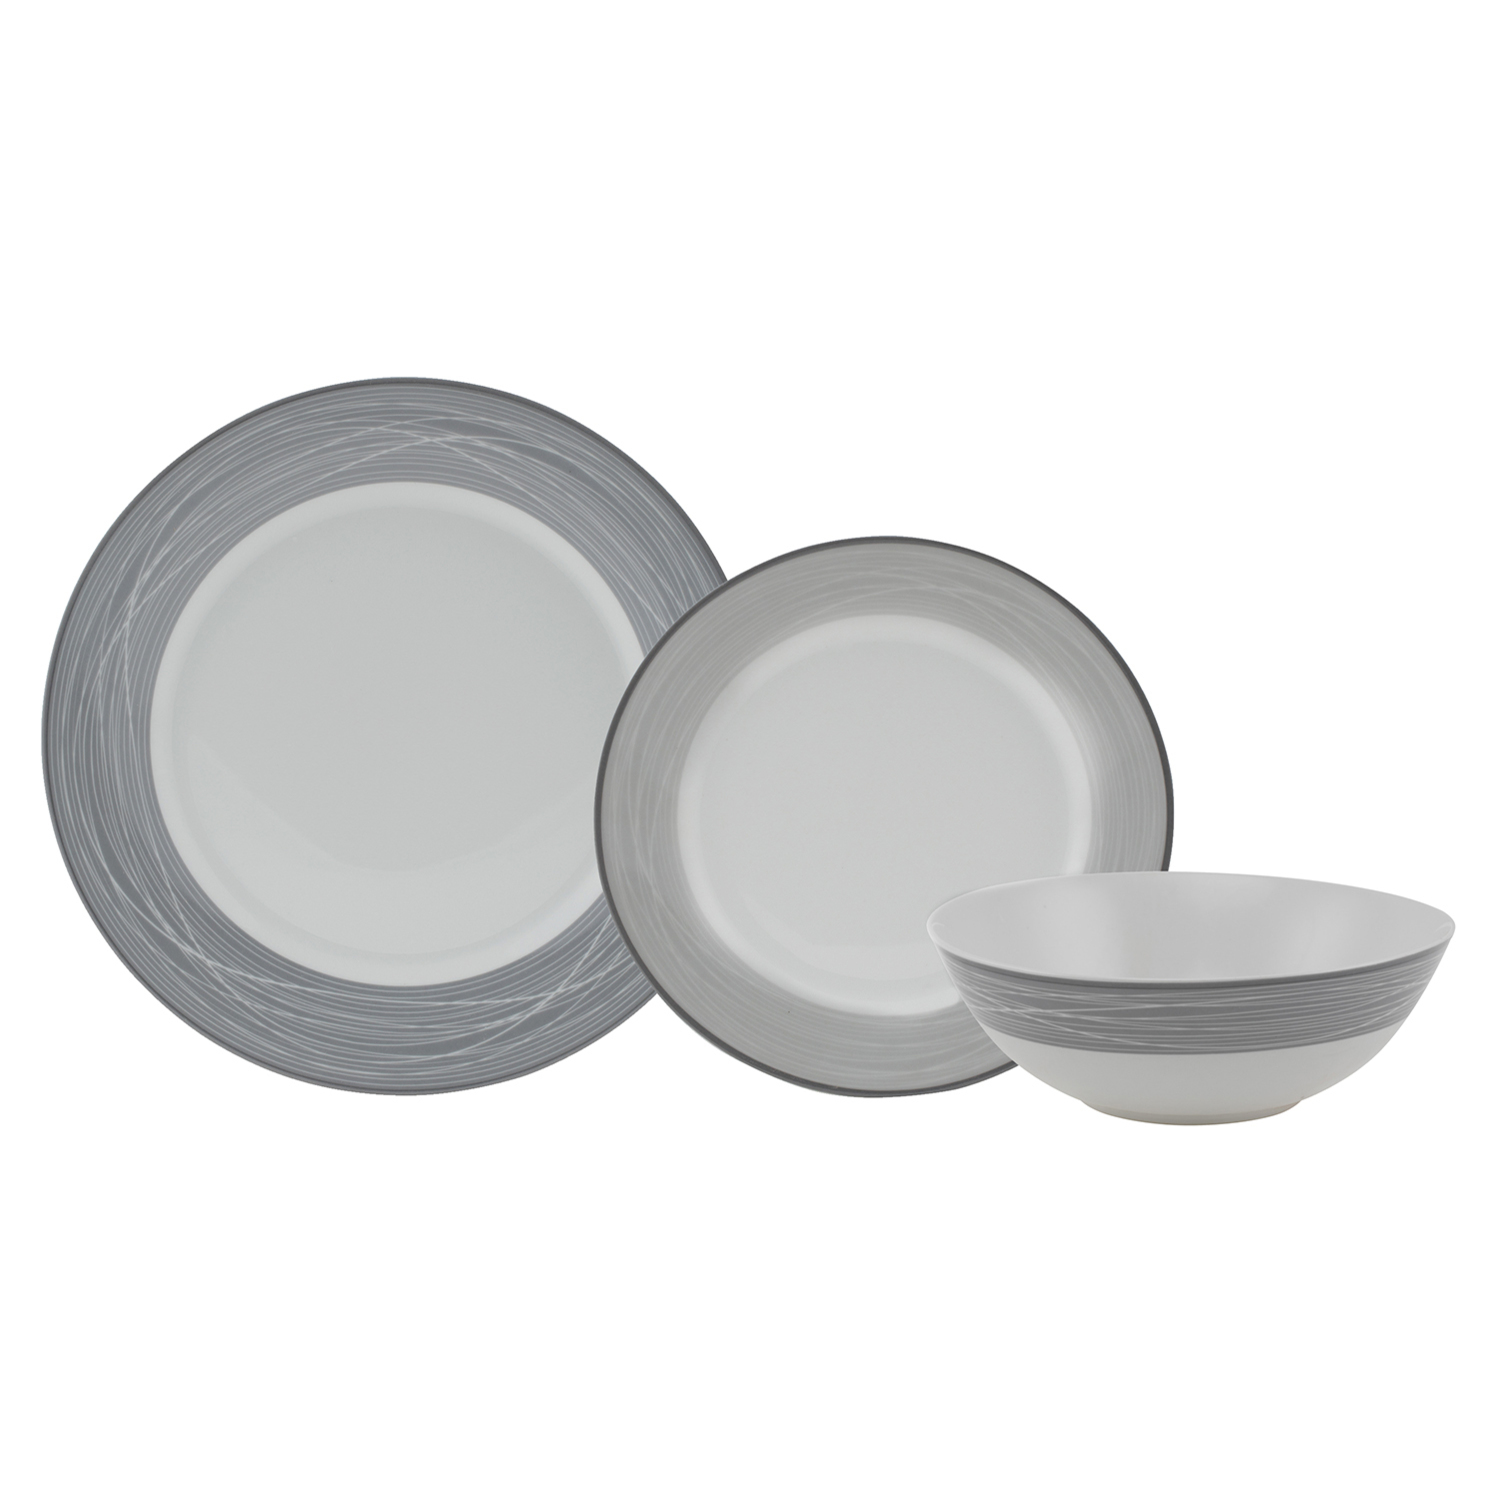 Evora Grey Porcelain 12 Piece Dinner Set Image 1